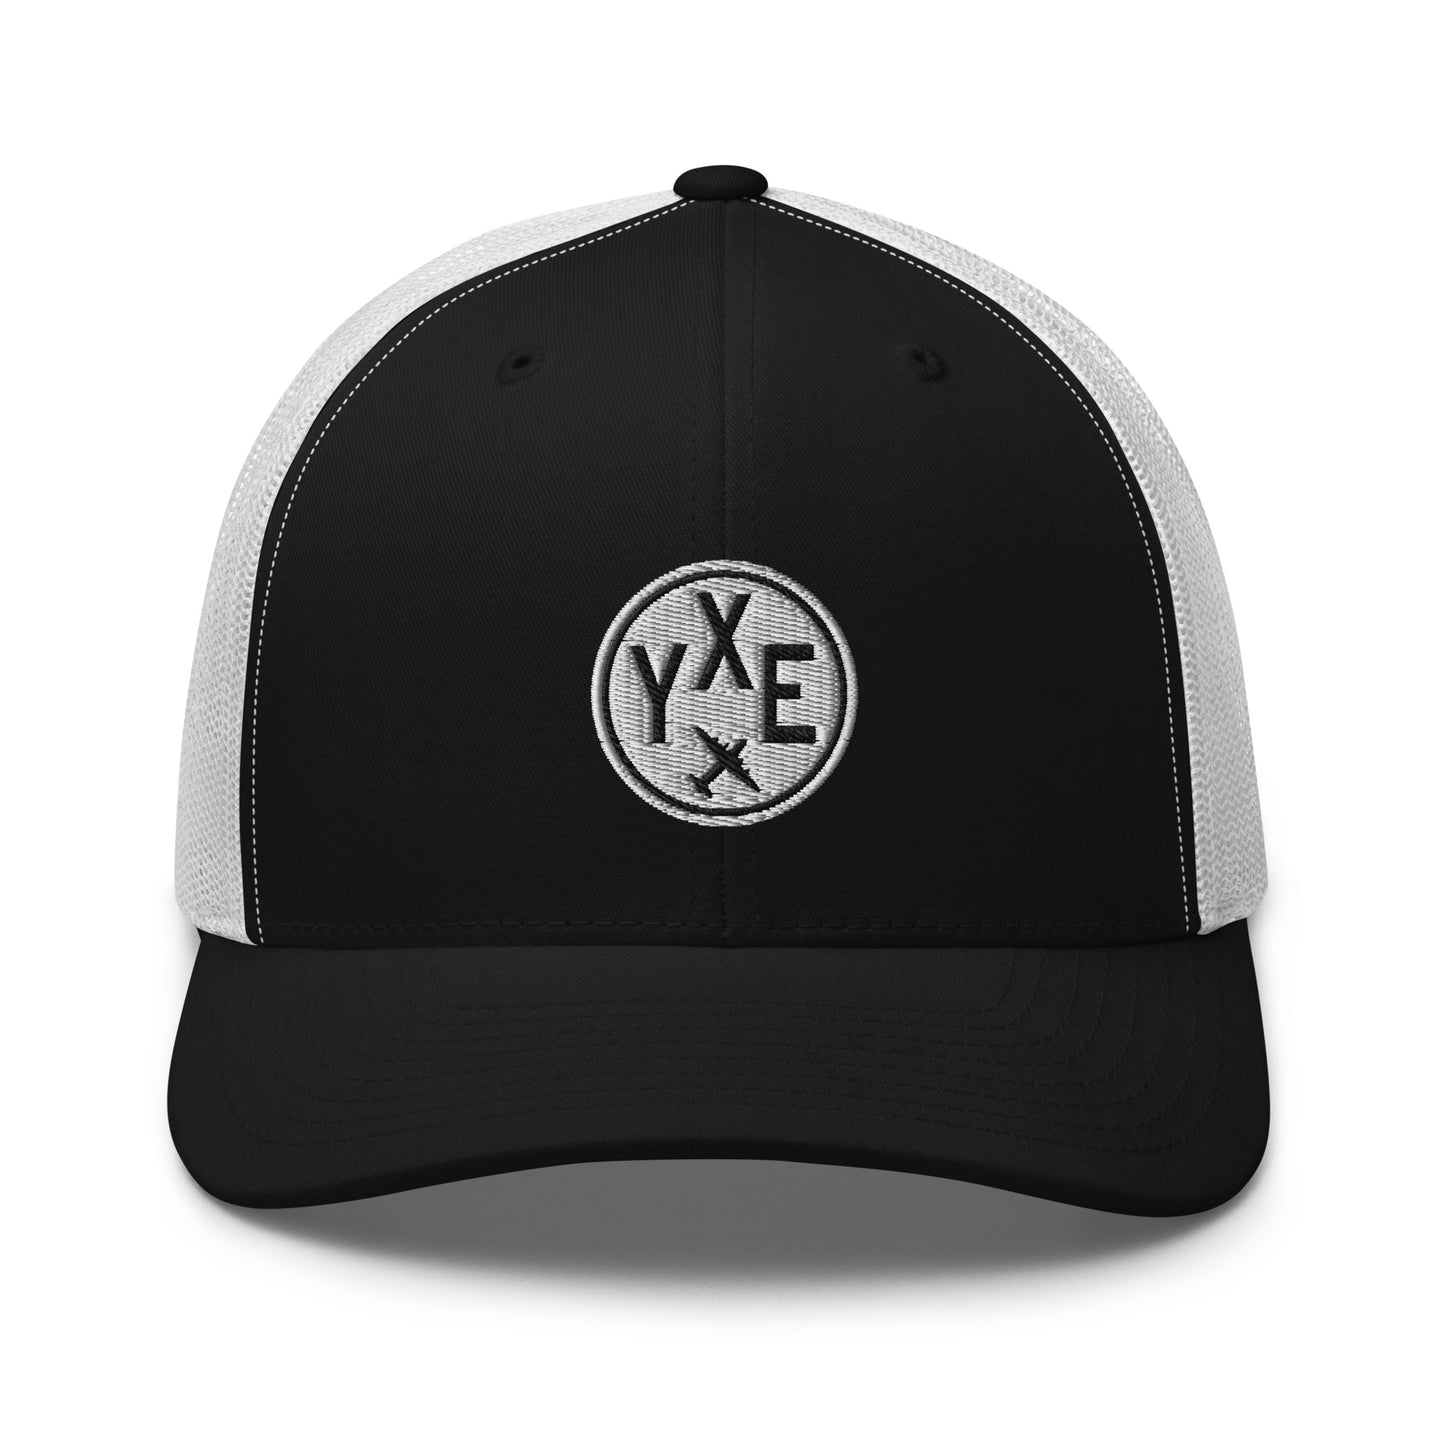 Roundel Trucker Hat - Black & White • YXE Saskatoon • YHM Designs - Image 09